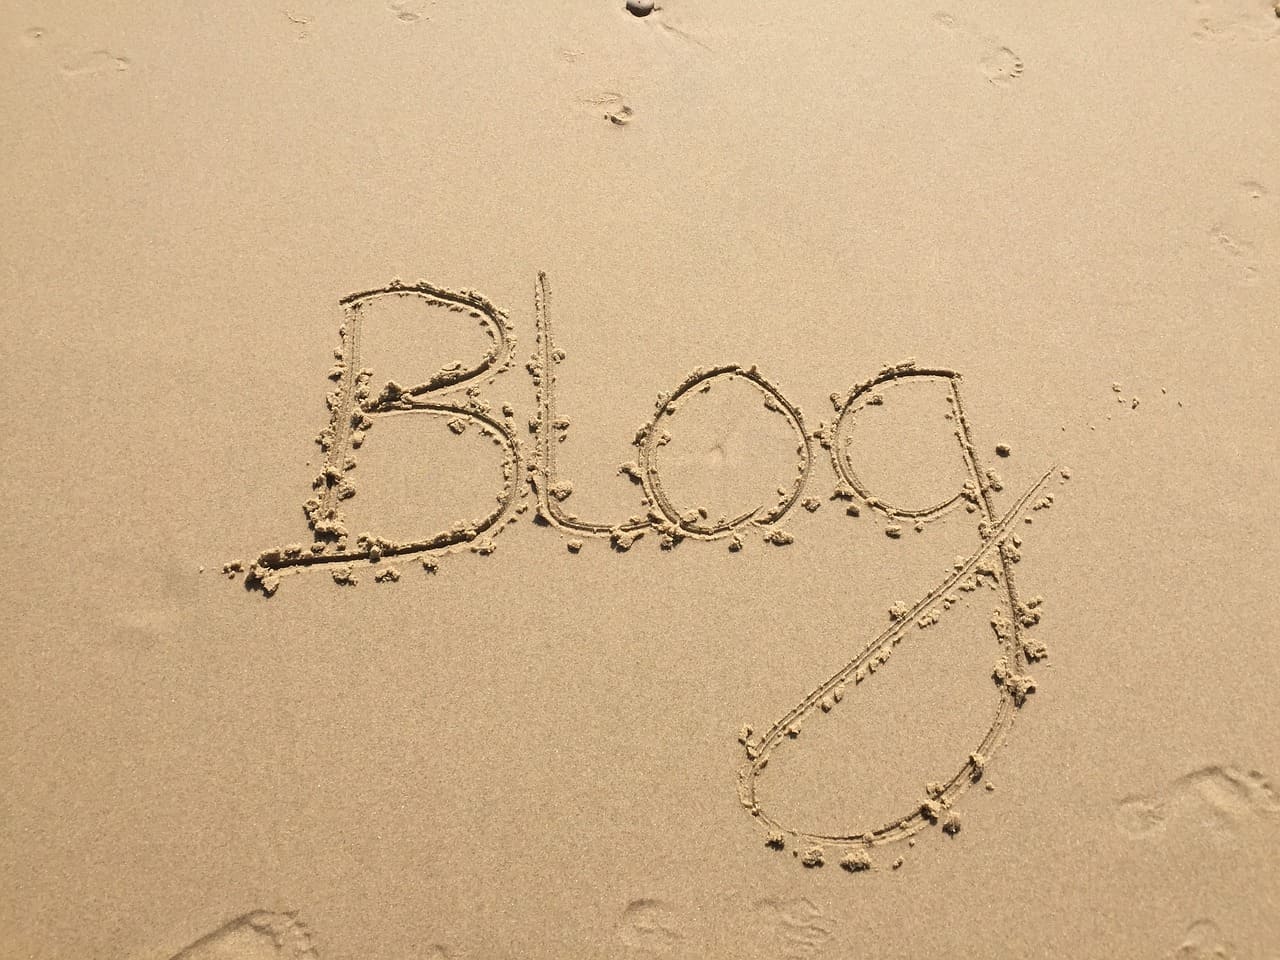 mot blog dans le sable